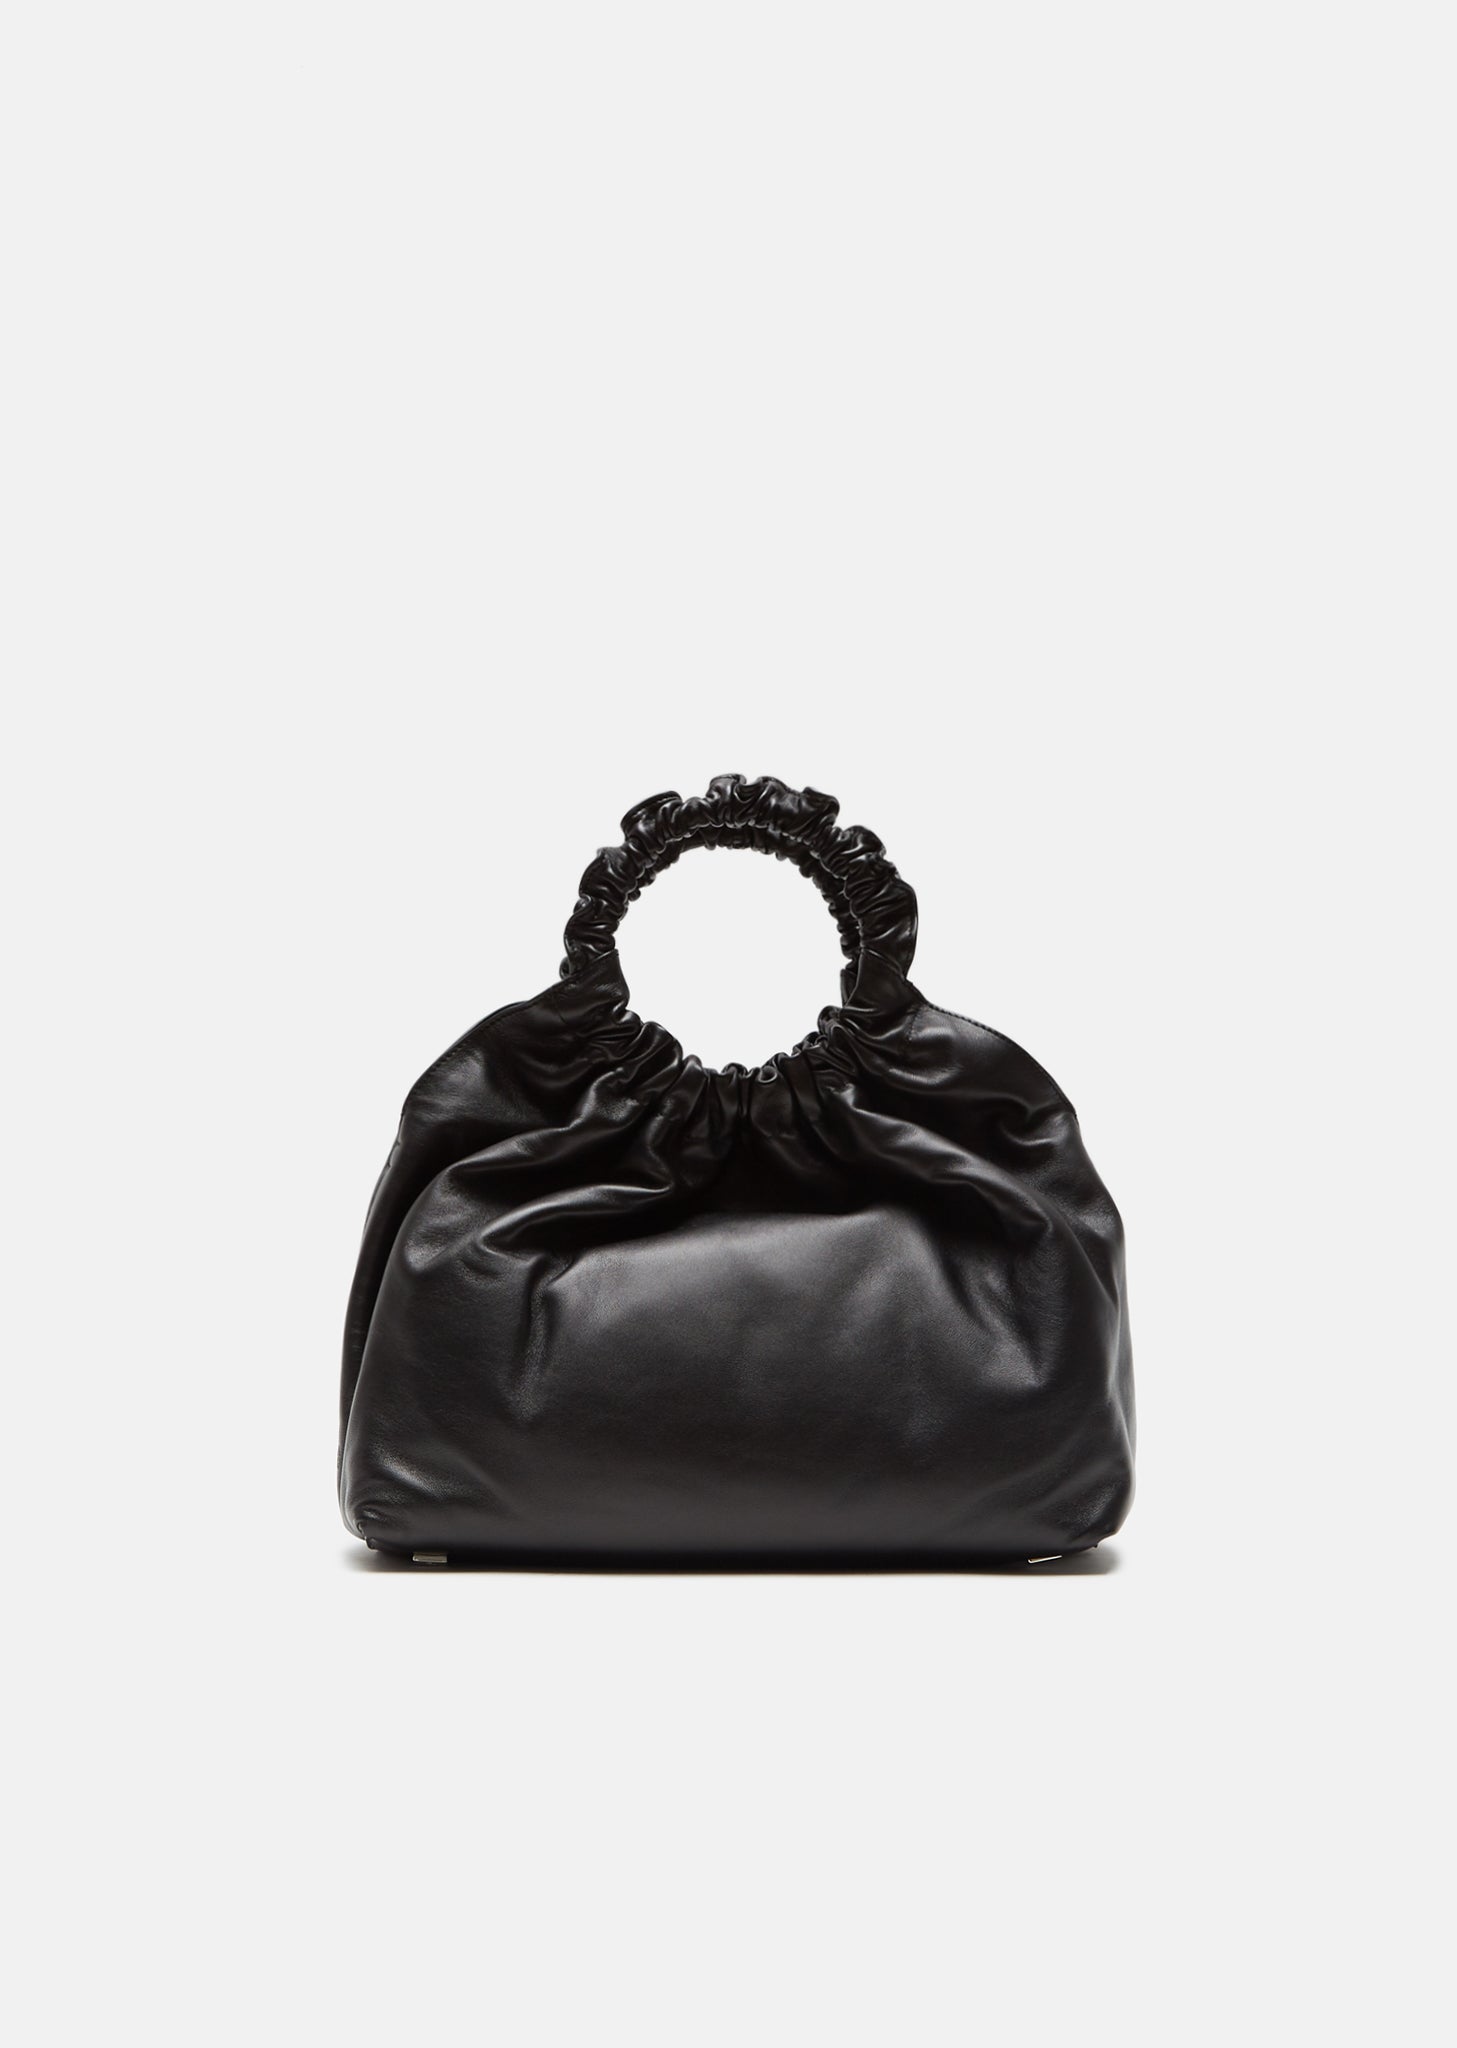 Coeur Rabat Magenta ( Bag & Black Flap ) – MoniqueRene